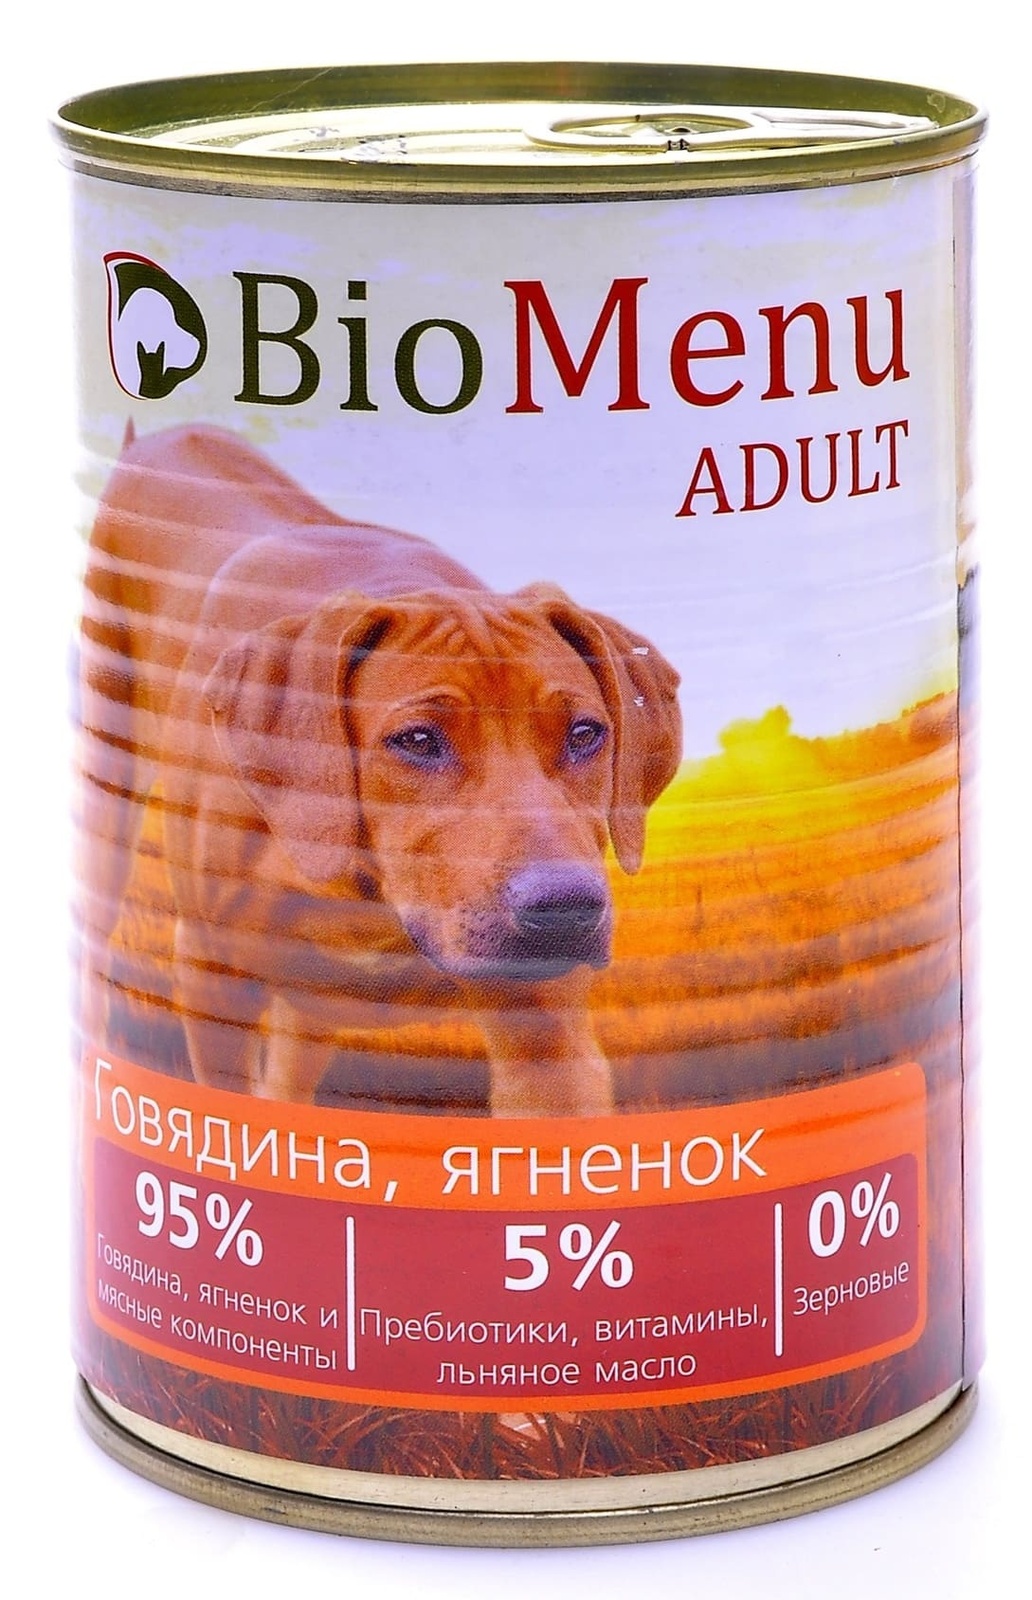 BioMenu BioMenu консервы для собак говядина и ягненок (410 г) biomenu biomenu консервы для собак цыпленок с ананасом 410 г